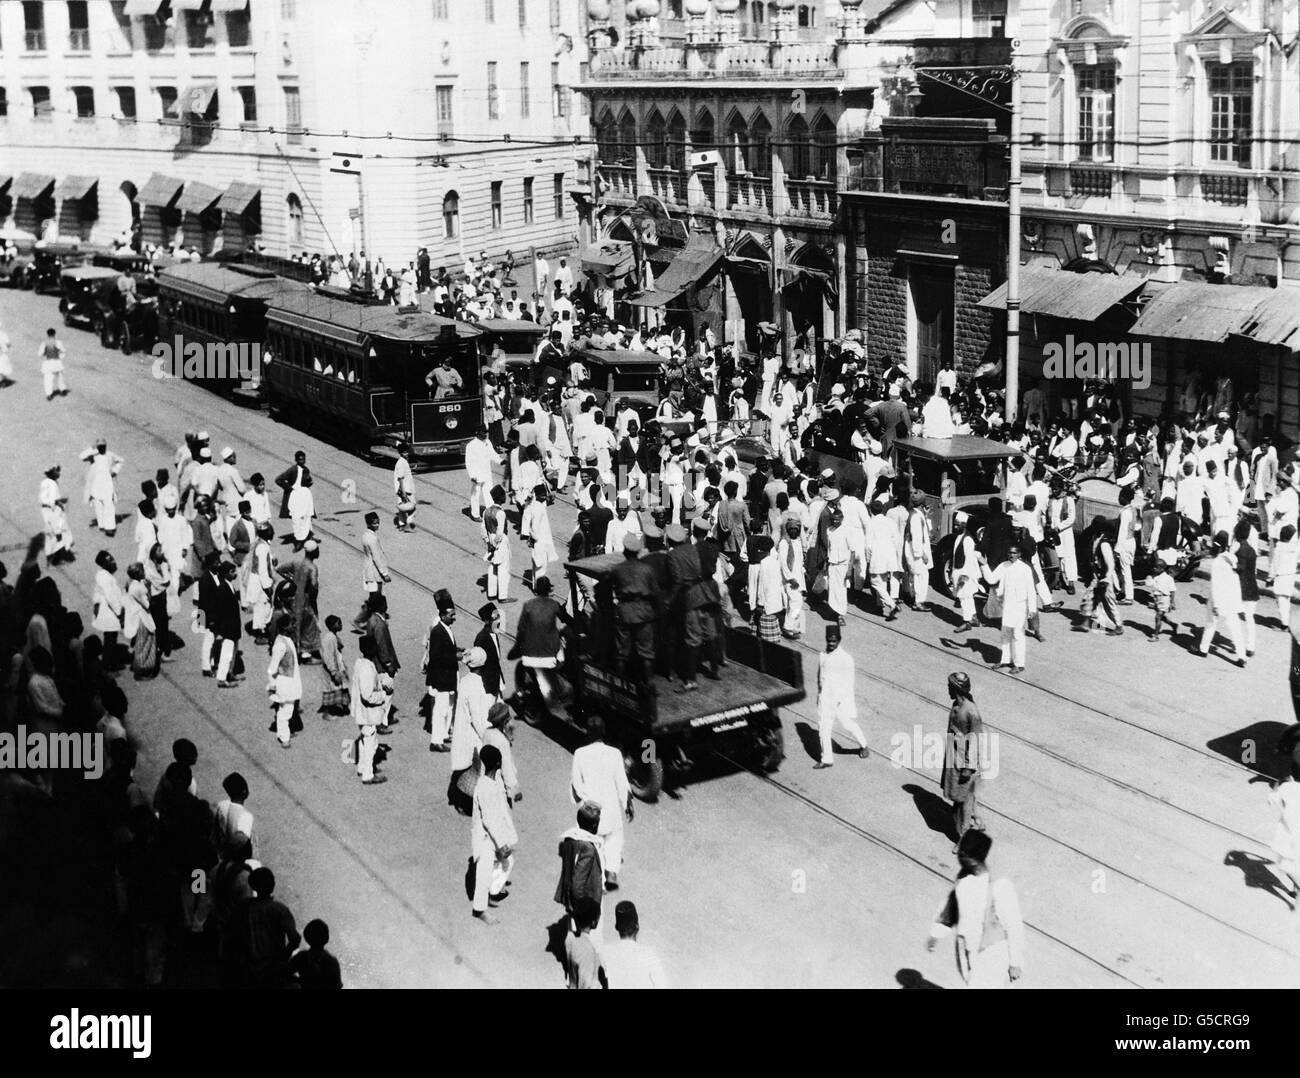 BOMBAY 1929: Britische und indische Polizeibeamte ziehen ein, um eine Straßenstörung während der Unruhen in Bombay im Jahr 1929 zu unterdrücken. Stockfoto